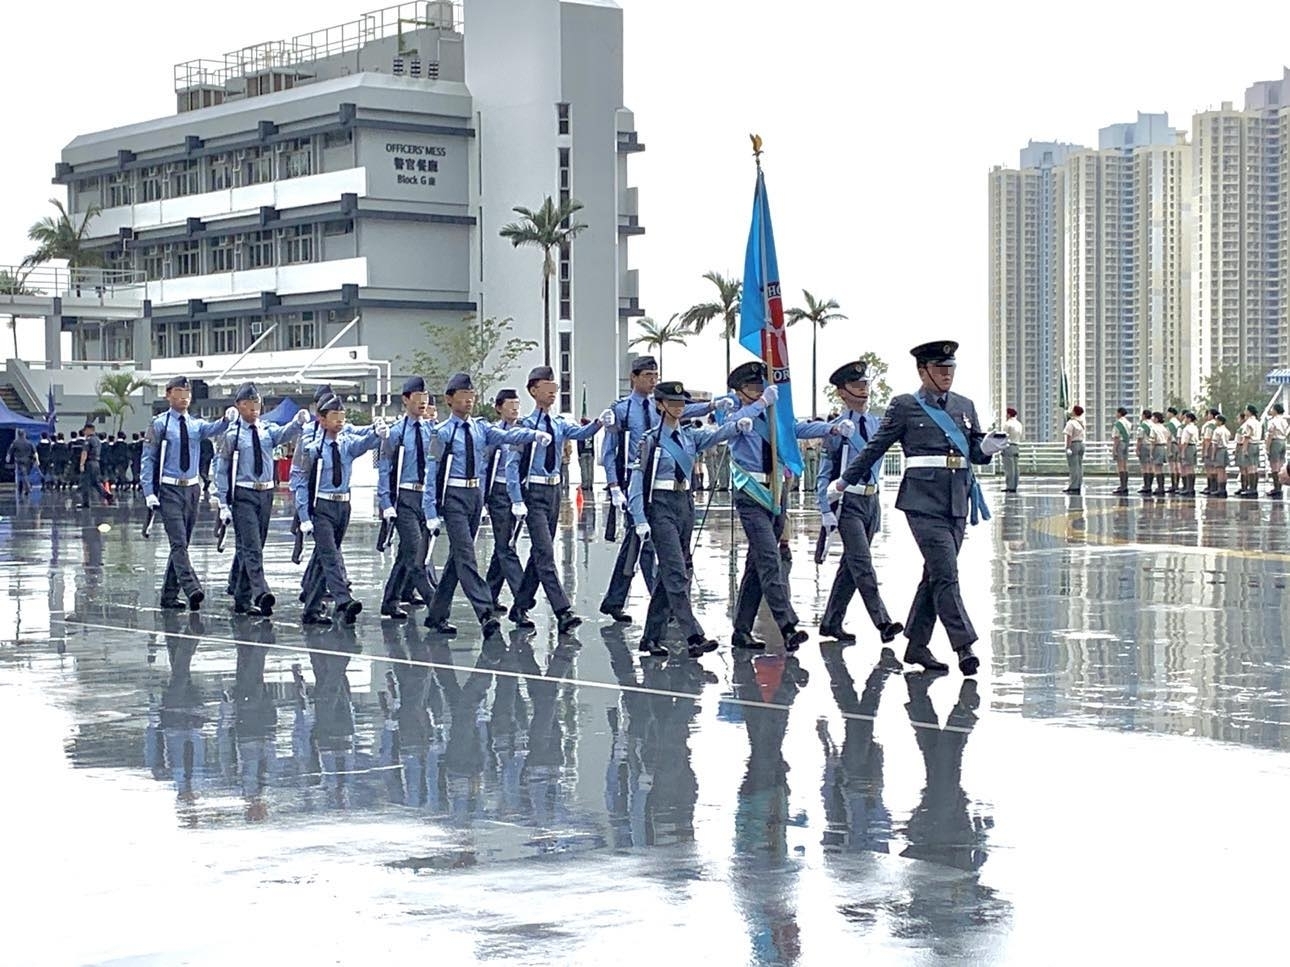 2019年3月、香港警察機動部隊総部で、香港航空青年団の代表がイギリス式の行進を行っている様子（写真提供：匿名）